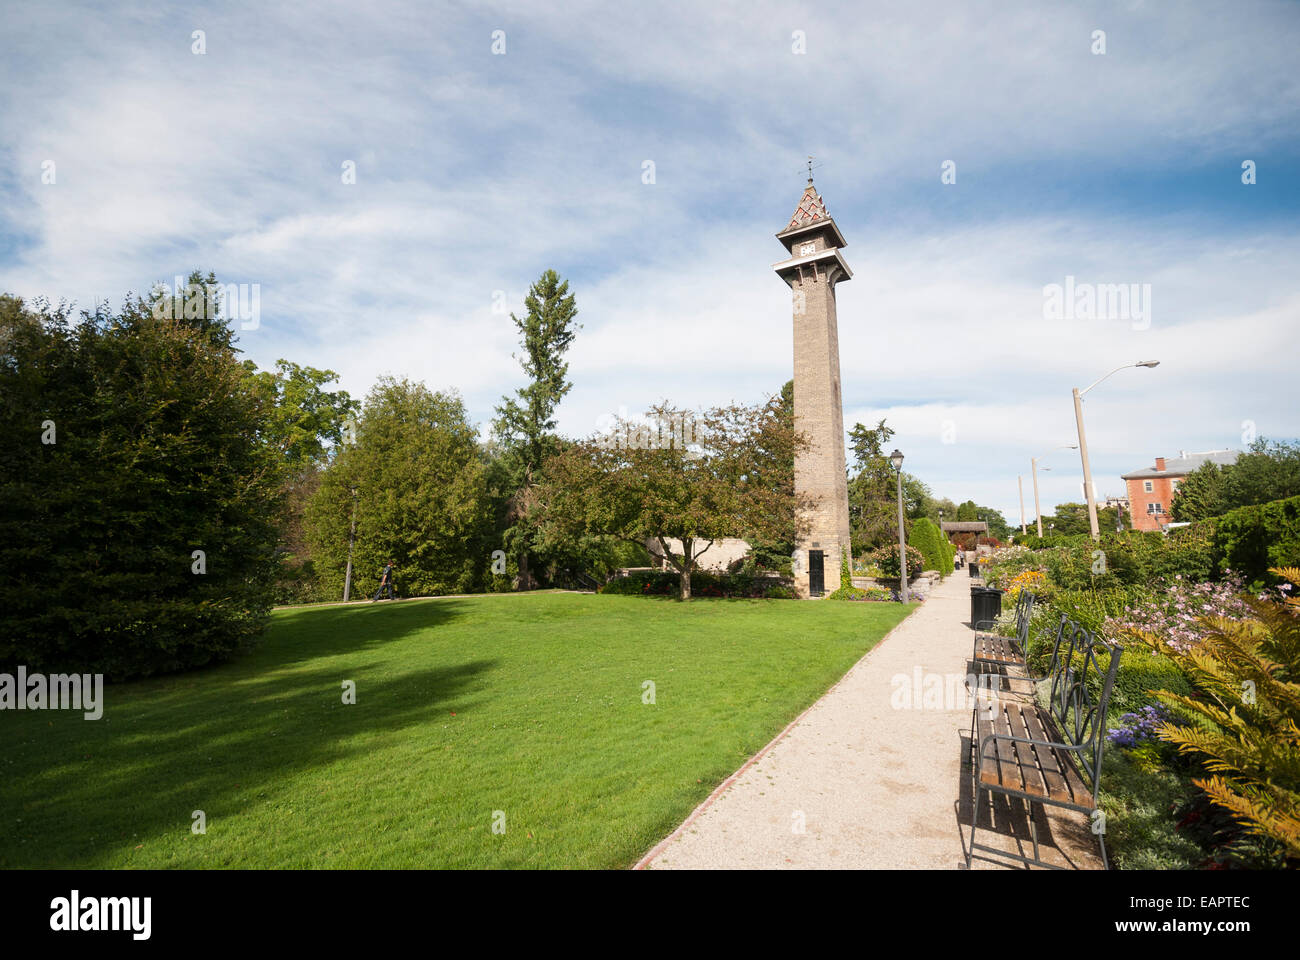 Ein Turm bleibt weiterhin an der Shakespeare Gardens früher Standort einer alten wollenen Mühle in Stratford, Ontario Kanada Stockfoto